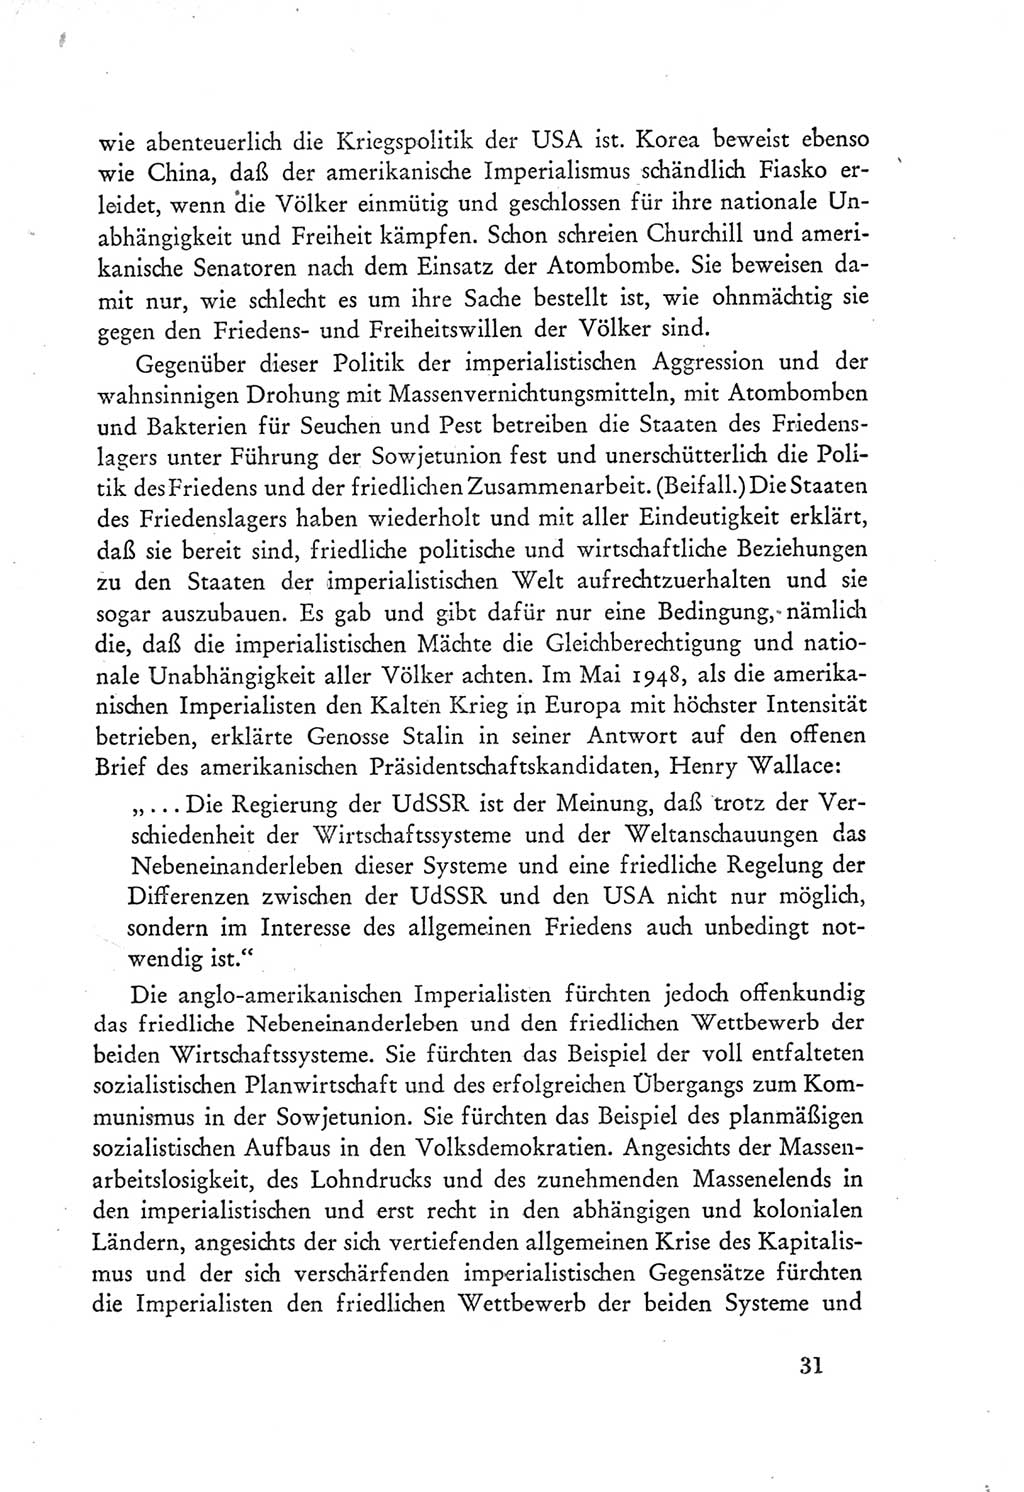 Protokoll der Verhandlungen des Ⅲ. Parteitages der Sozialistischen Einheitspartei Deutschlands (SED) [Deutsche Demokratische Republik (DDR)] 1950, Band 1, Seite 31 (Prot. Verh. Ⅲ. PT SED DDR 1950, Bd. 1, S. 31)